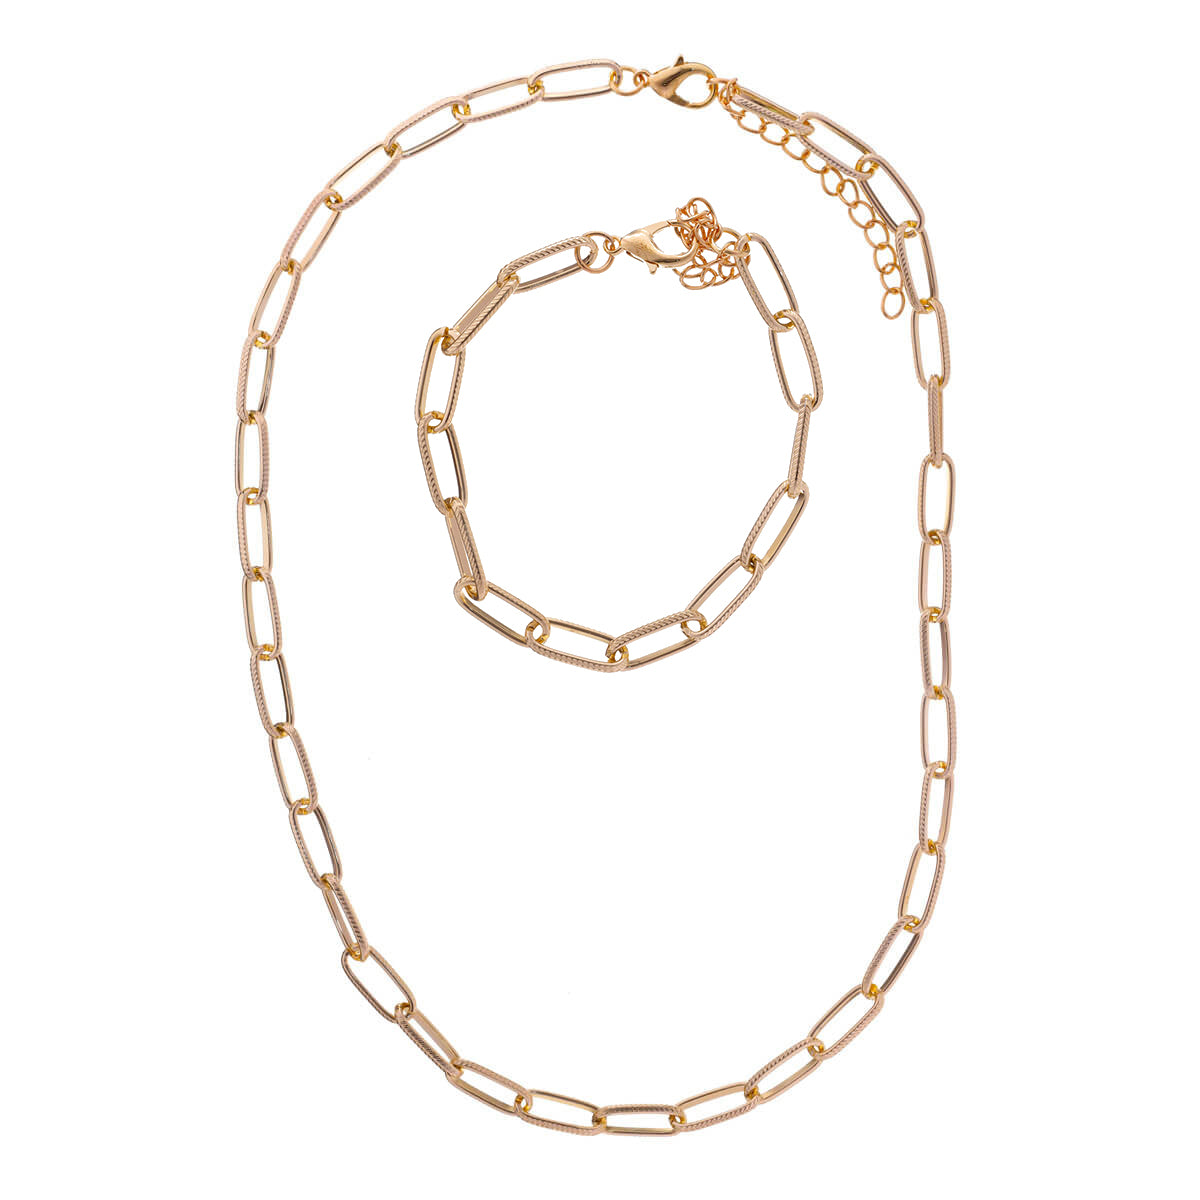 Cable chain necklace + bracelet